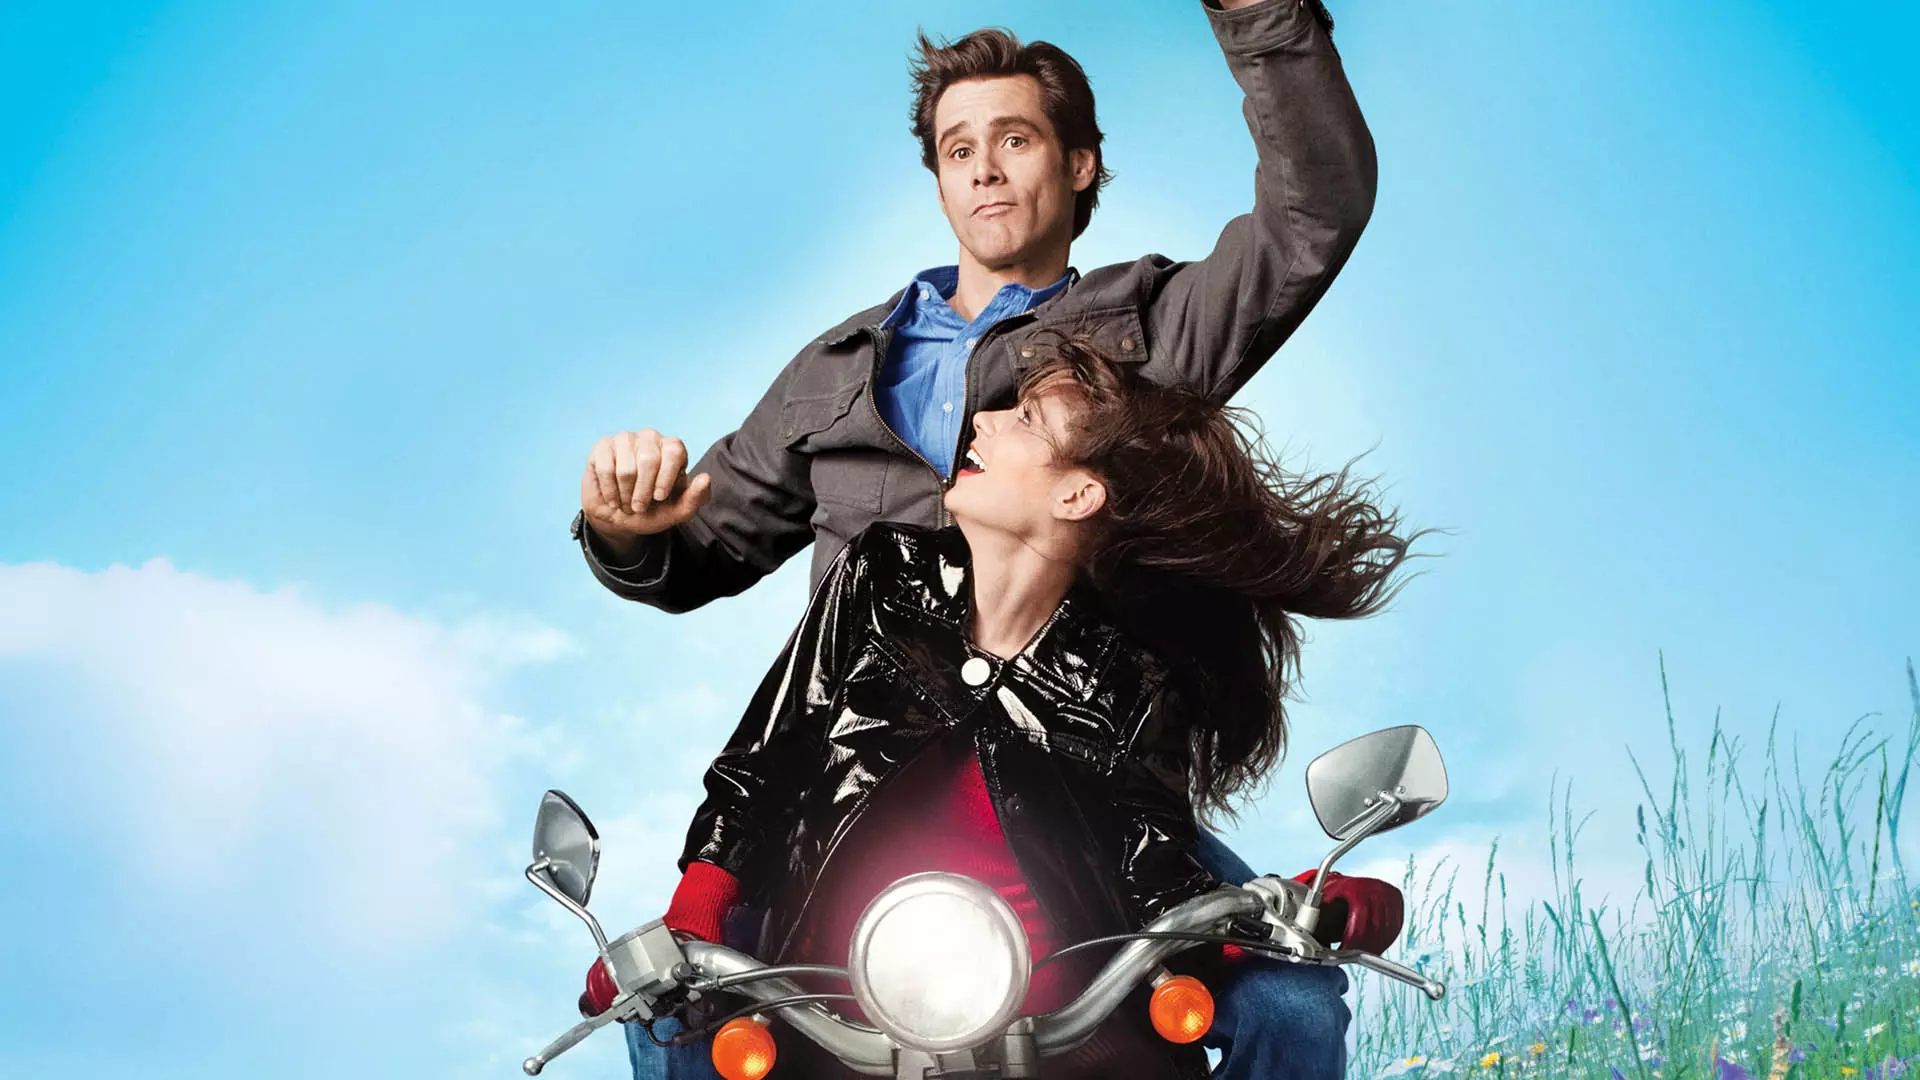 جیم کری روی یک موتورسیکلت در فیلم Yes Man